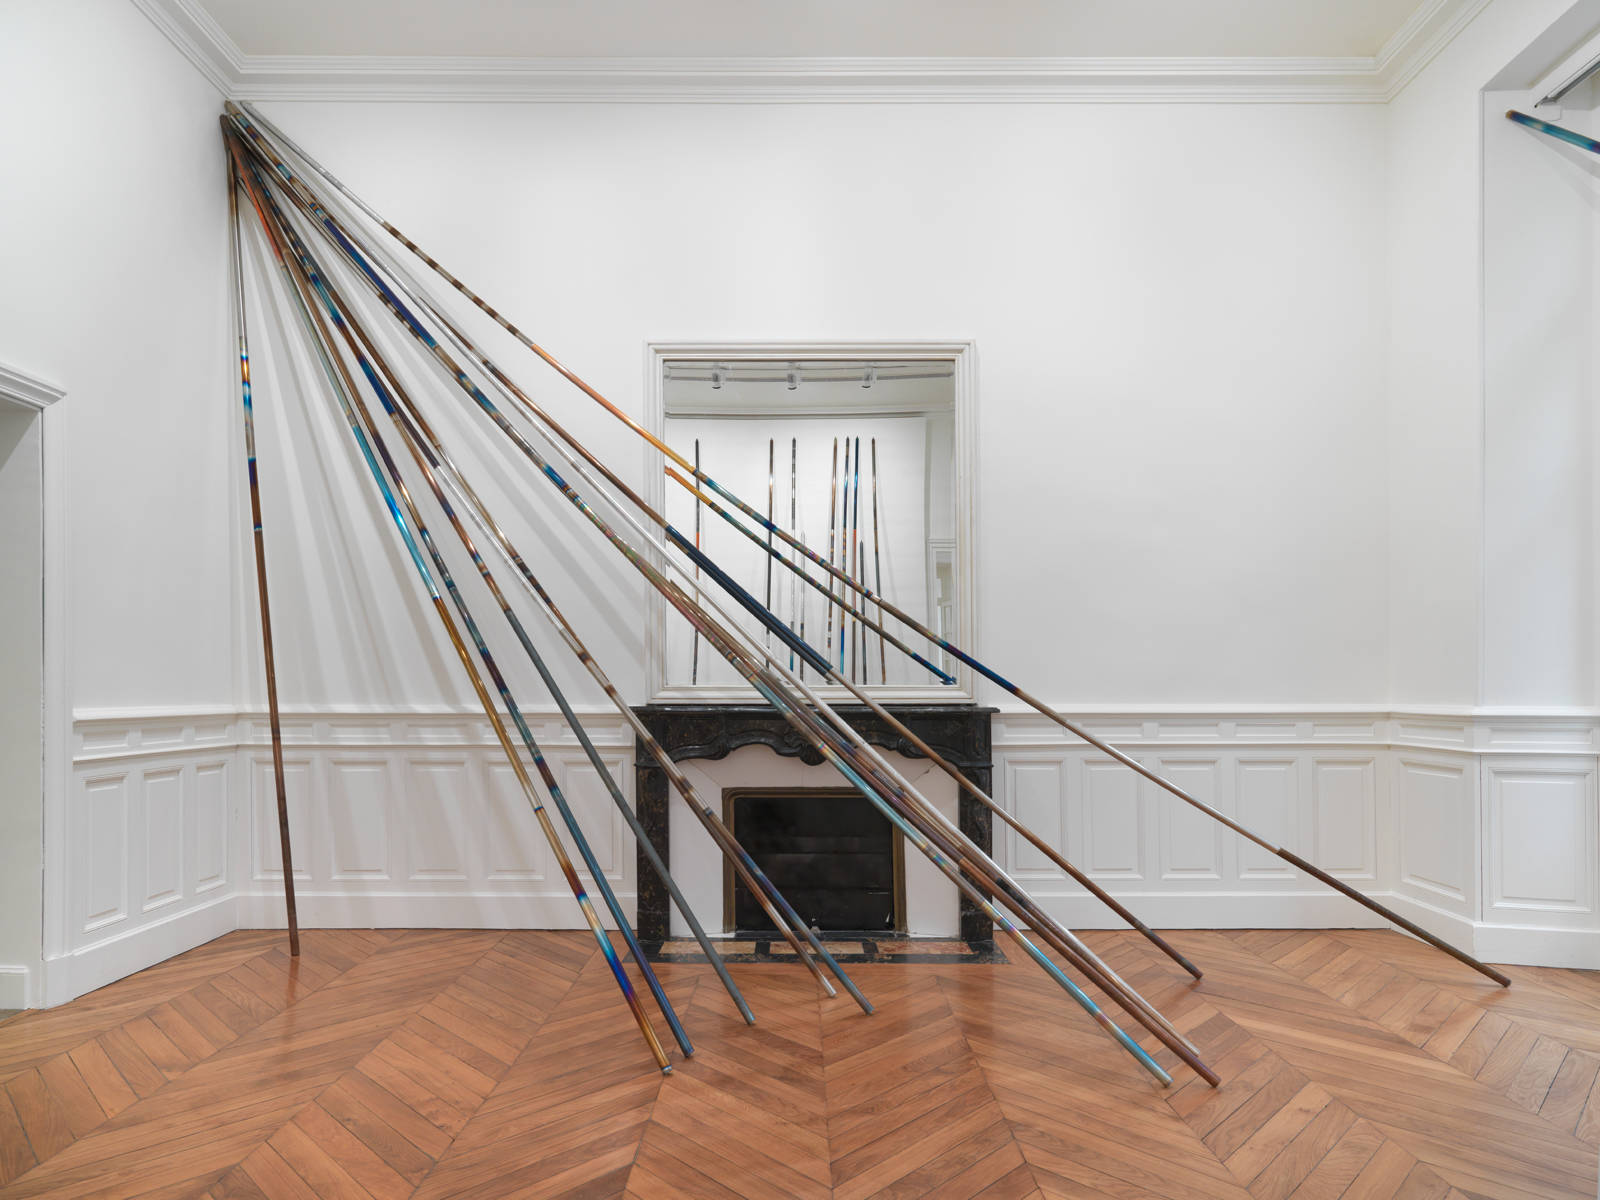 Raphael Hefti / "On Core / Encore", exhibition view, Fondation Vincent van Gogh, Arles / 2015